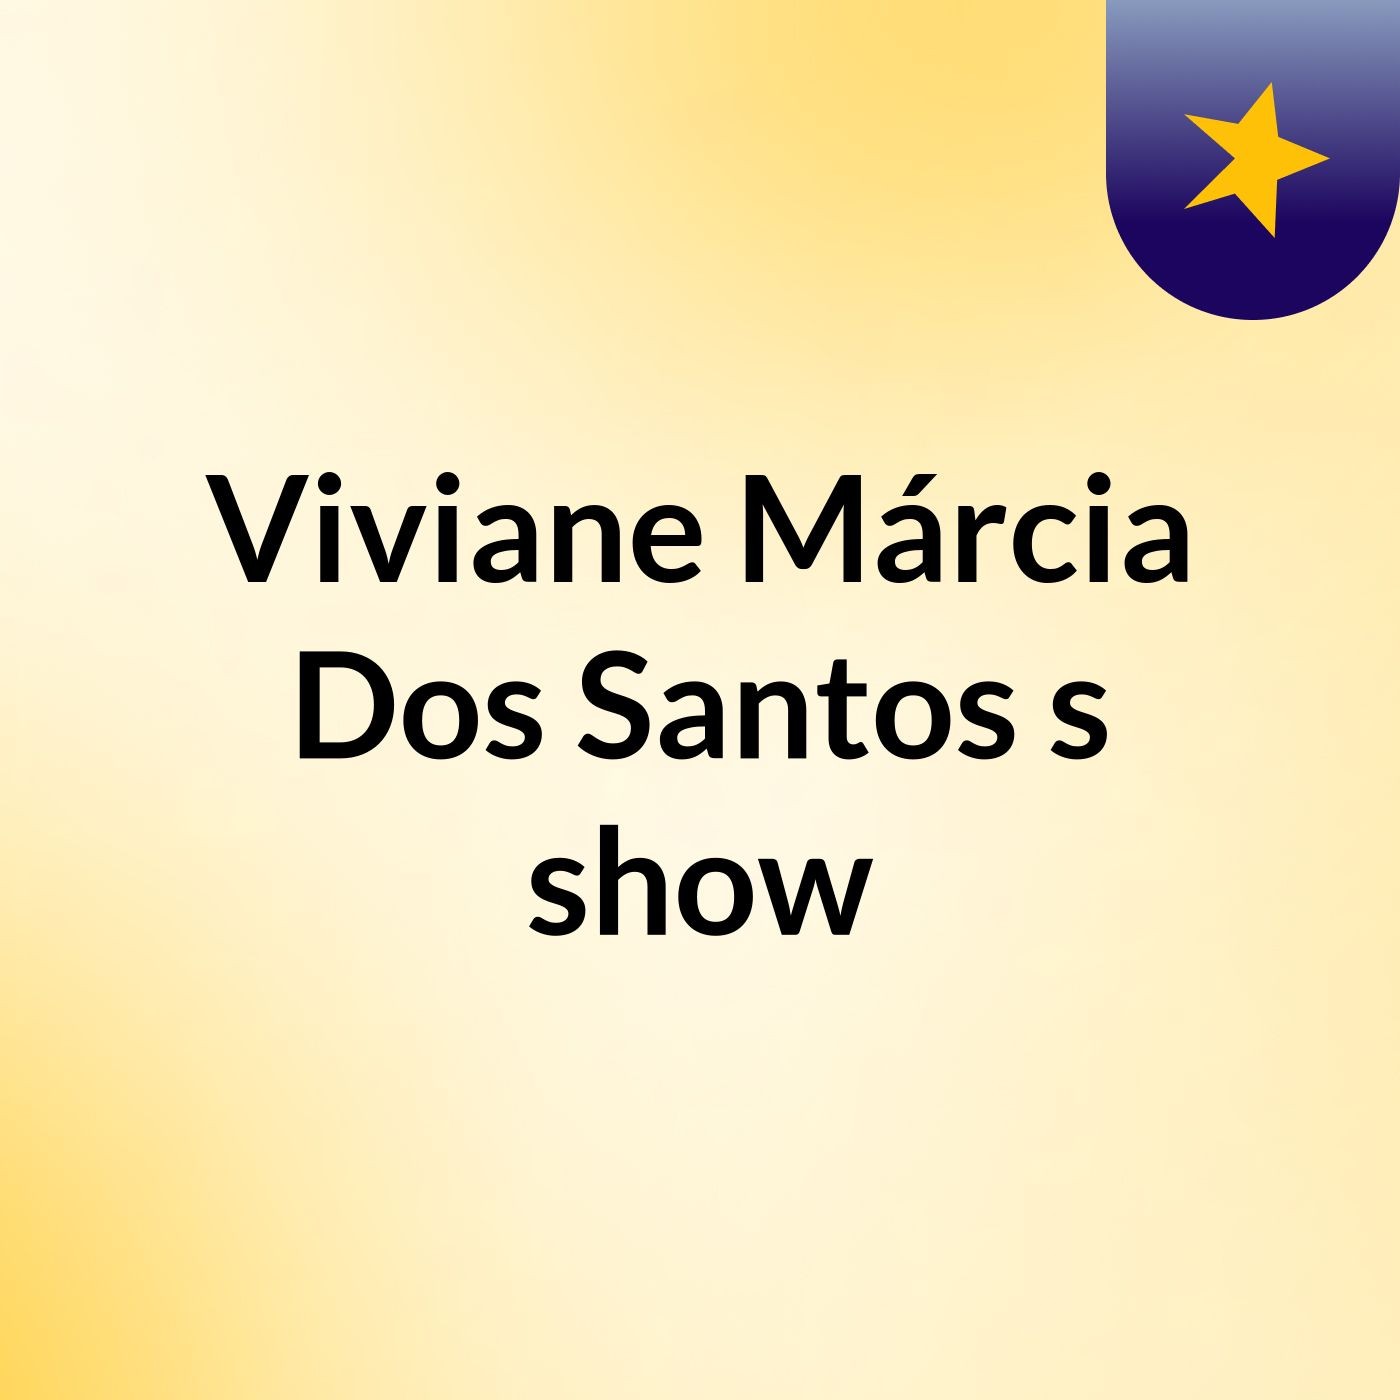 Viviane Márcia Dos Santos's show